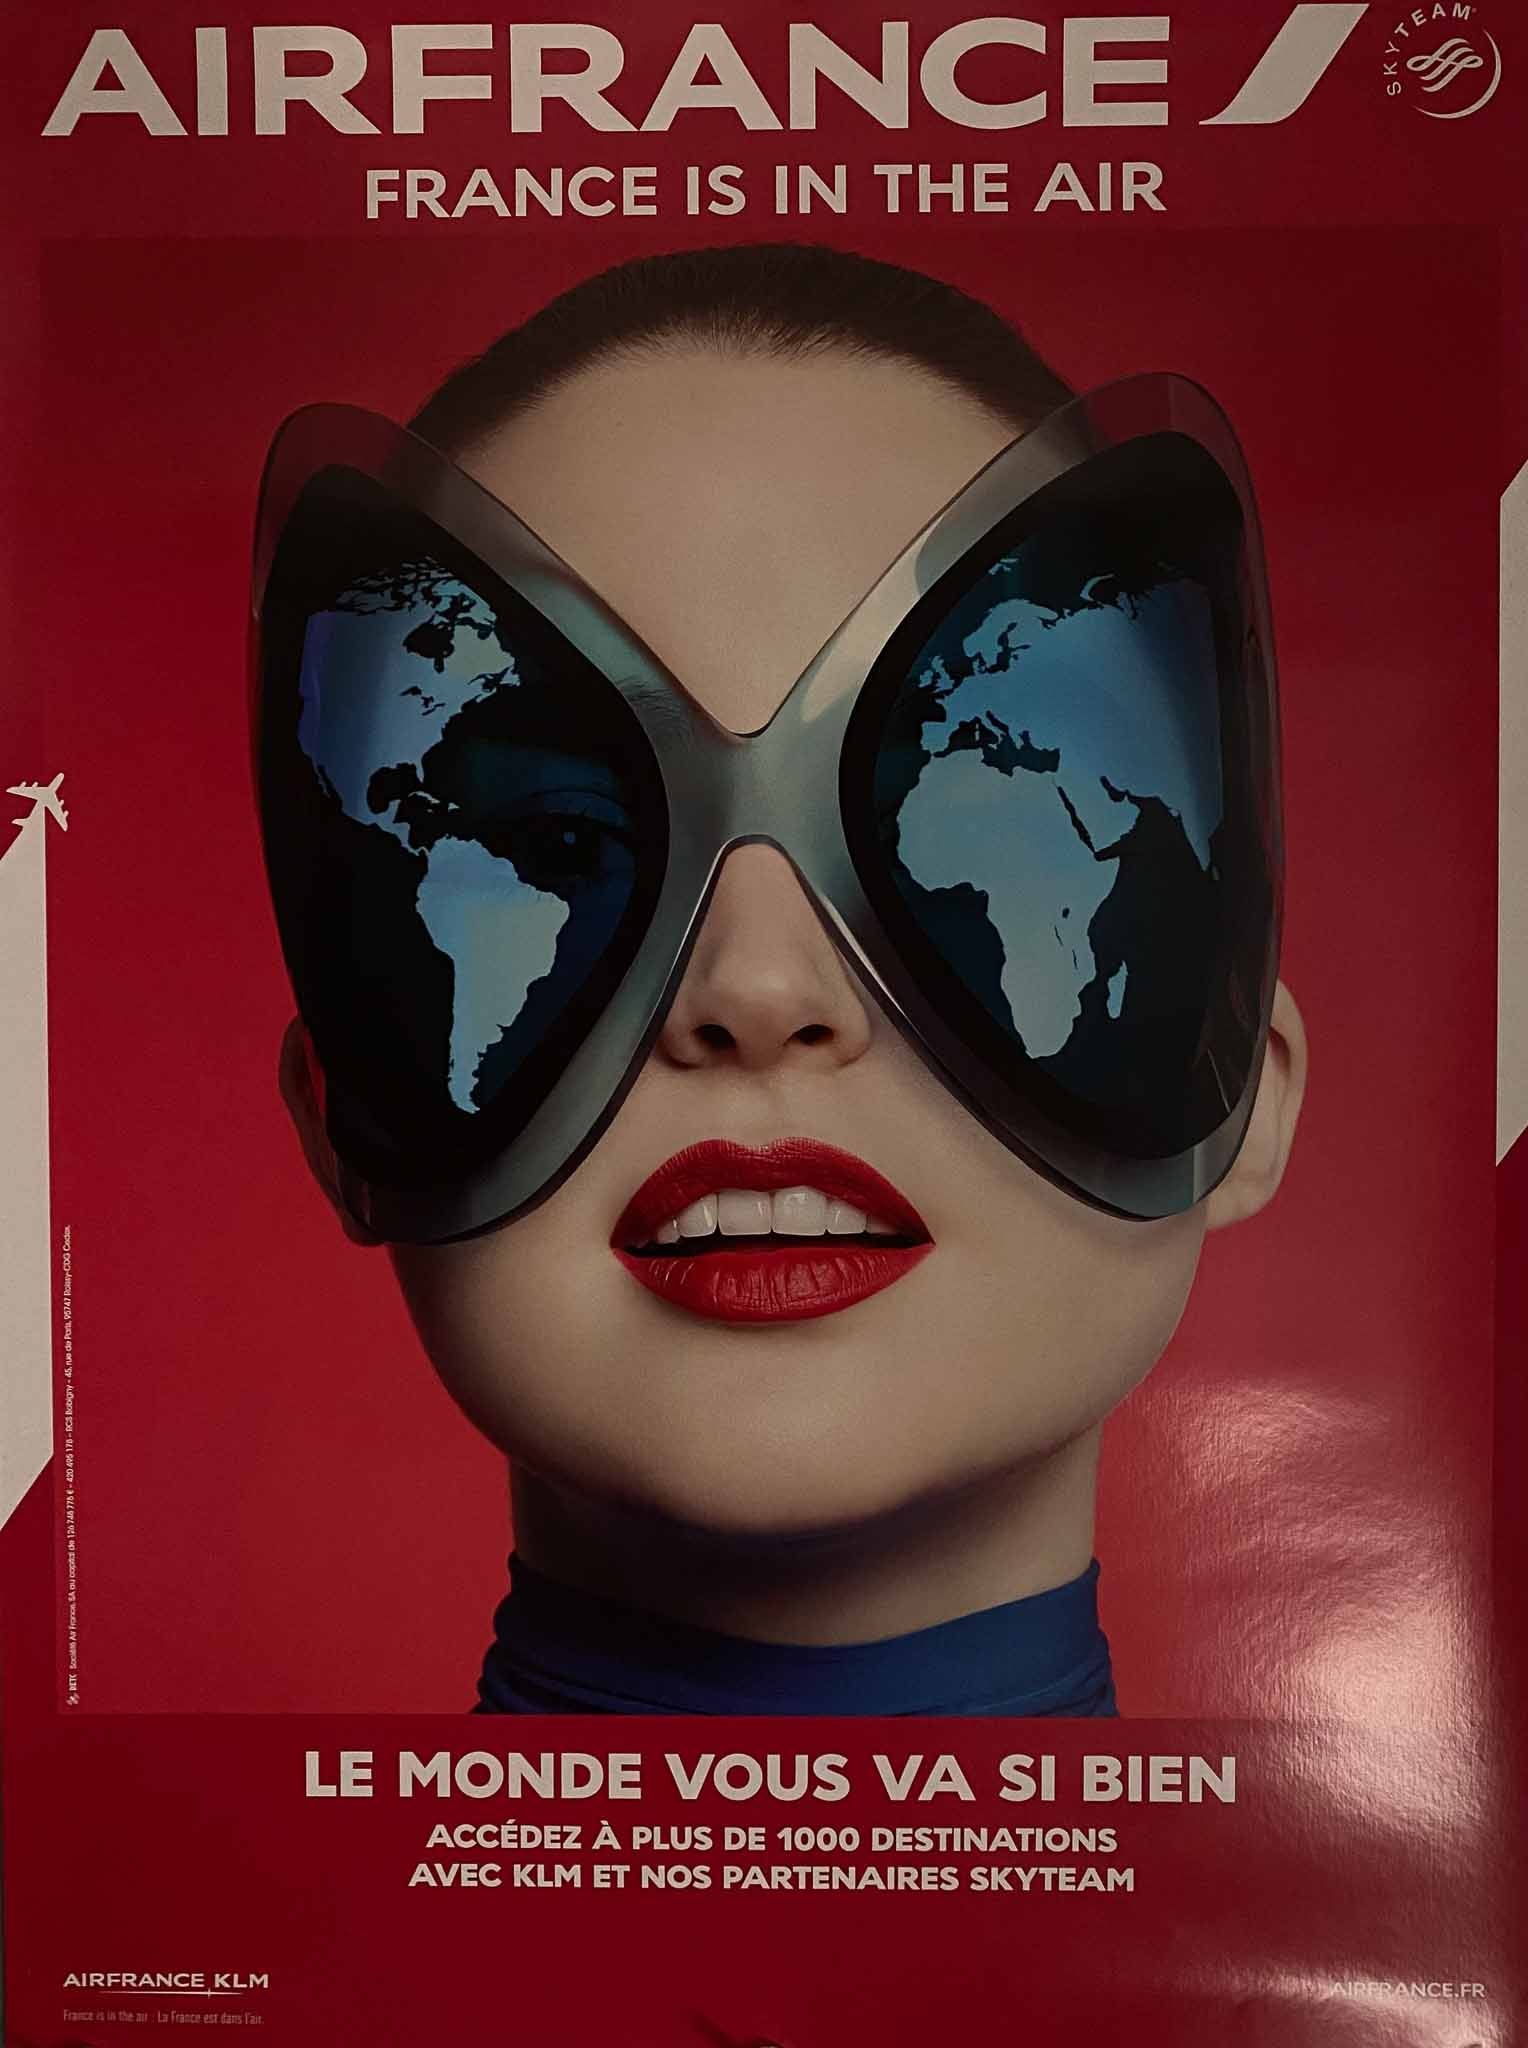 Affiche Air France KLM "France is in the Air" le Monde vous va si Bien - Sophia Sanchez & Mauro Mongiello, 2014